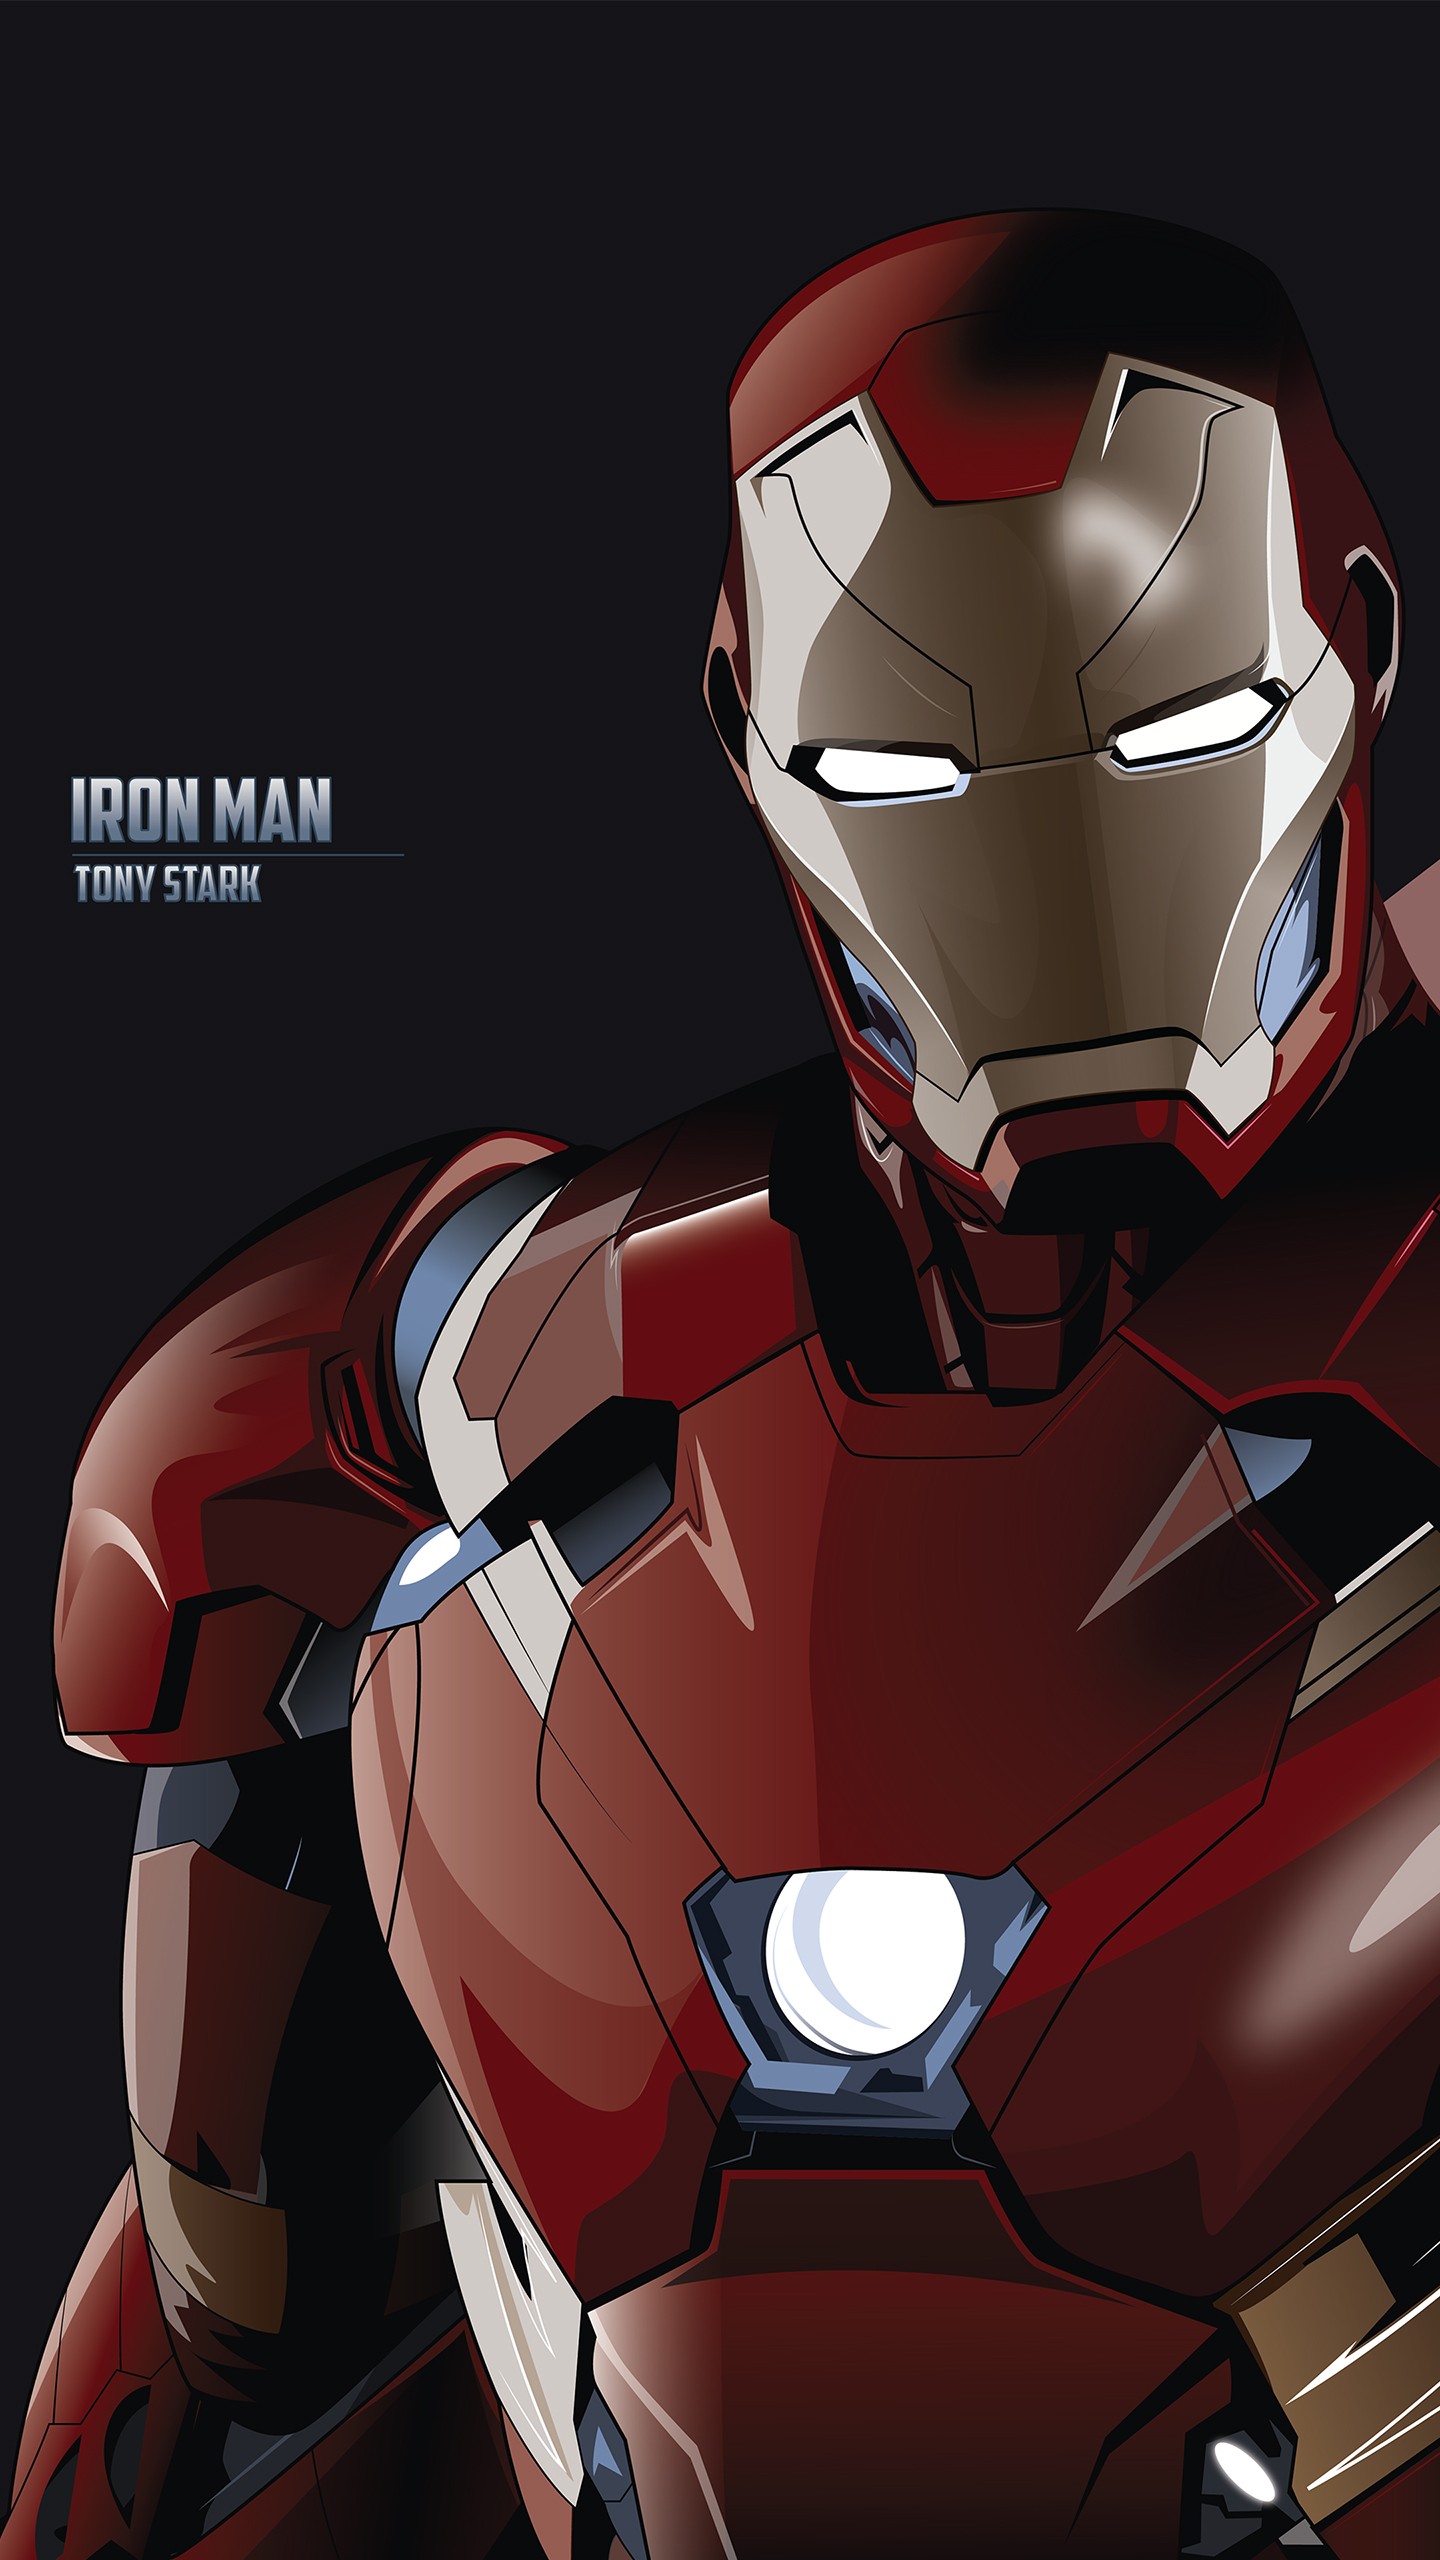 アンドロイドのためのアイアンマン壁紙hd,架空の人物,スーパーヒーロー,鉄人,アベンジャーズ,ヒーロー